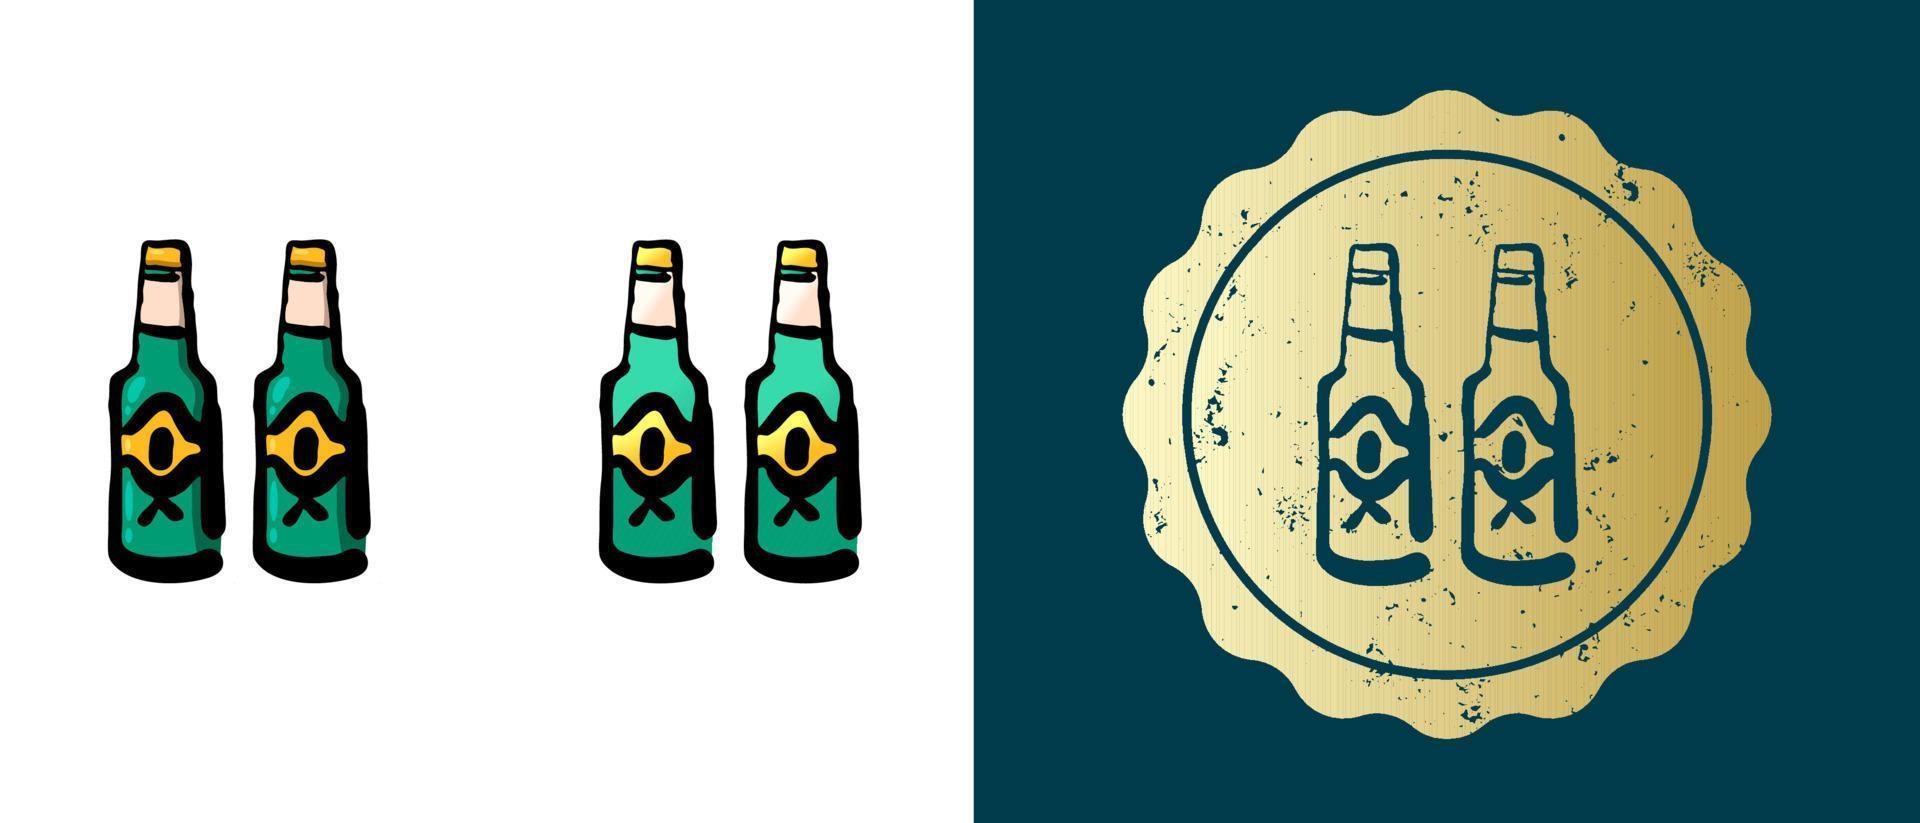 Dies ist eine Reihe von Retro-, Kontur- und Farbverlaufssymbolen von Bierflaschen. Dies ist ein goldener Aufkleber, ein Alkoholflaschenetikett. stilvolle Lösung für Verpackungs- und Website-Design. runder Grunge-Goldstempel. vektor